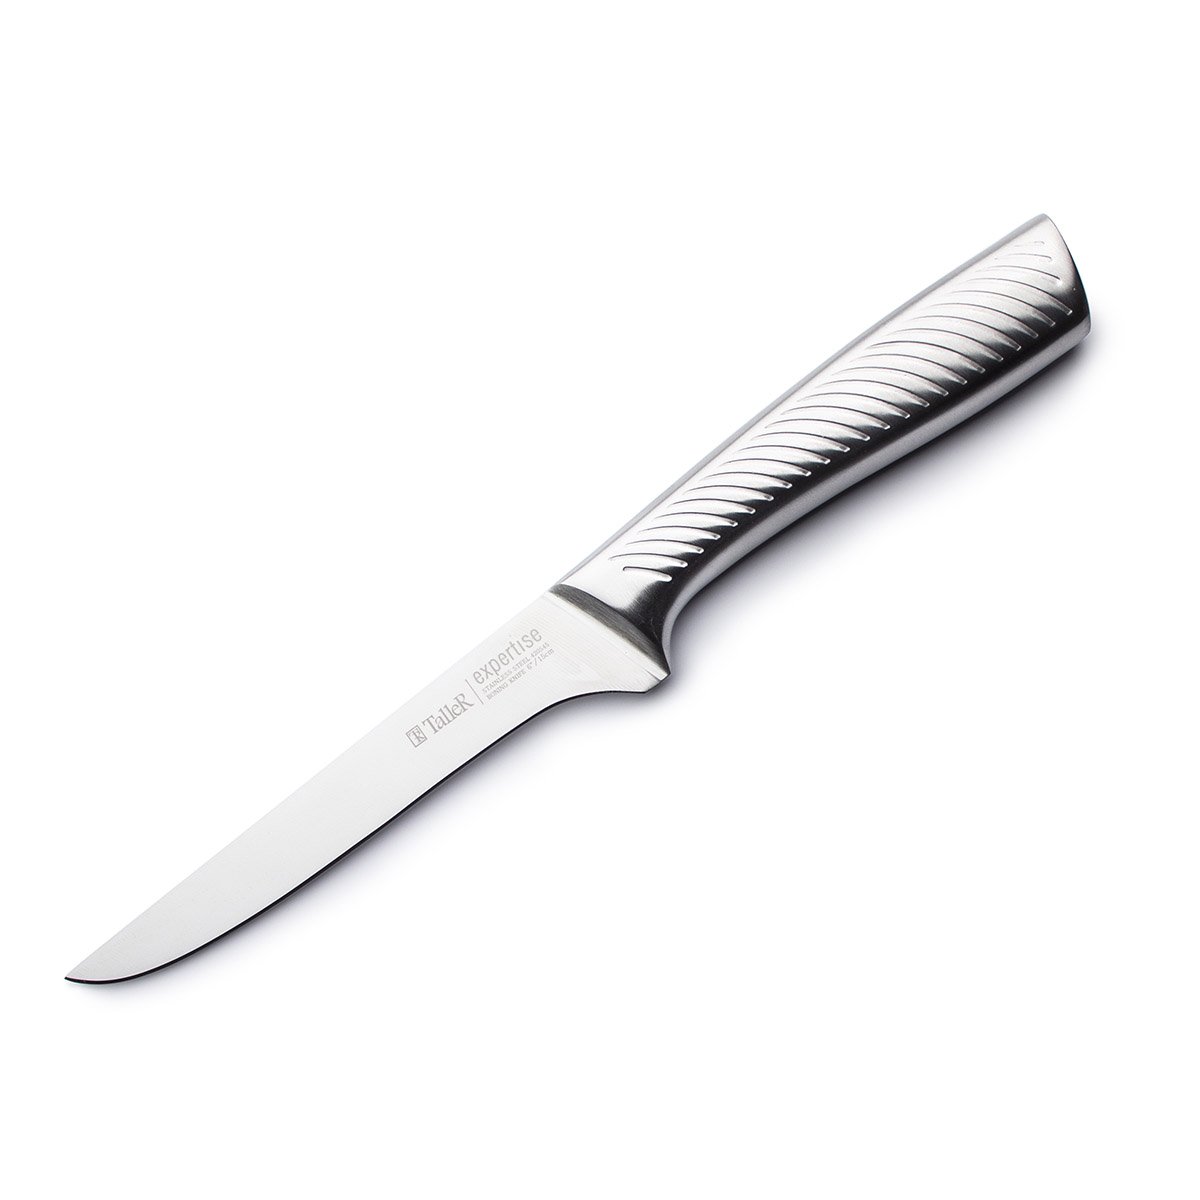 Нож филейный 99265 TalleR